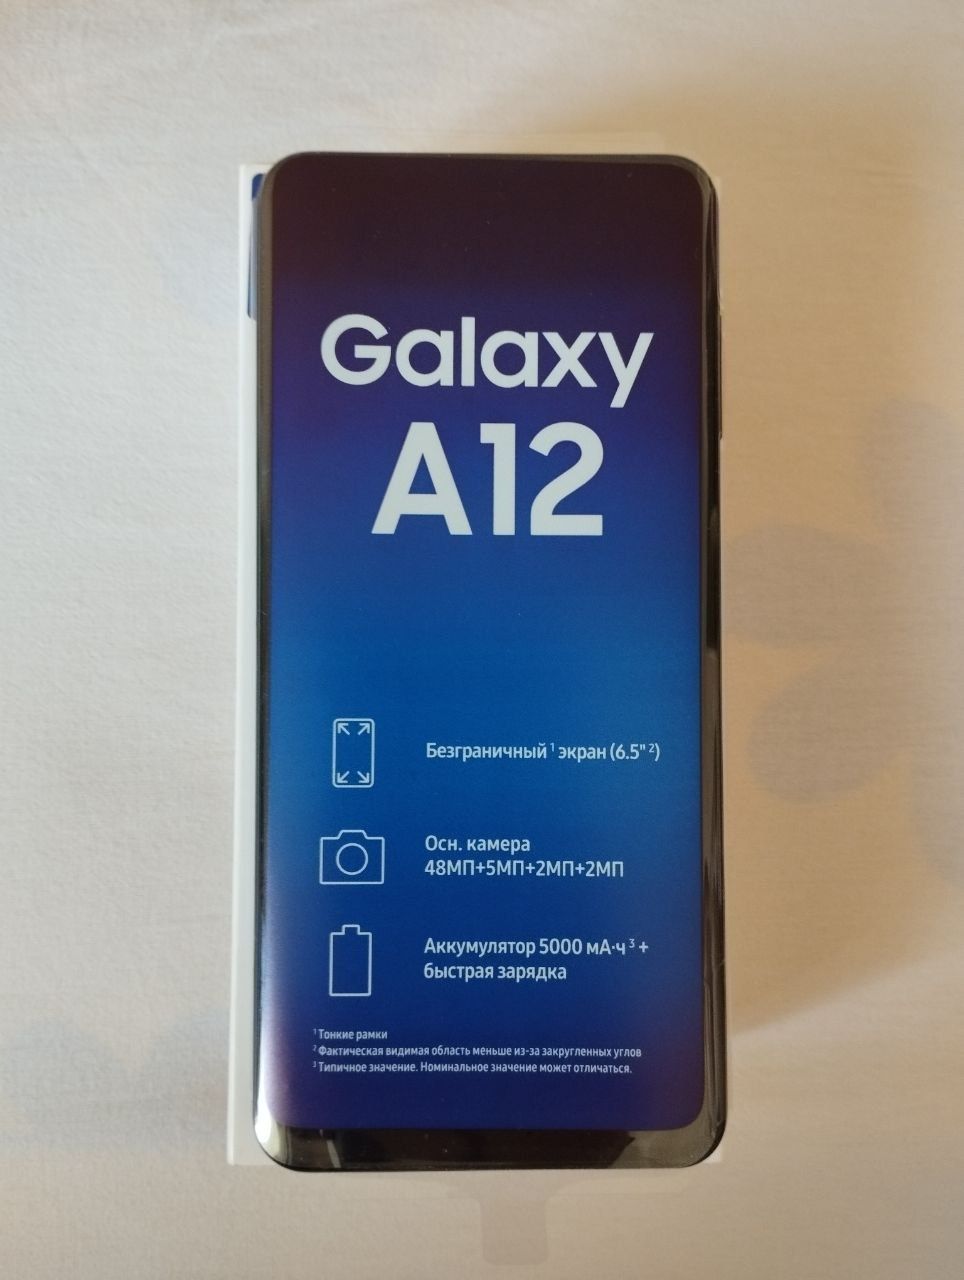 Samsung galaxy A12 ideal